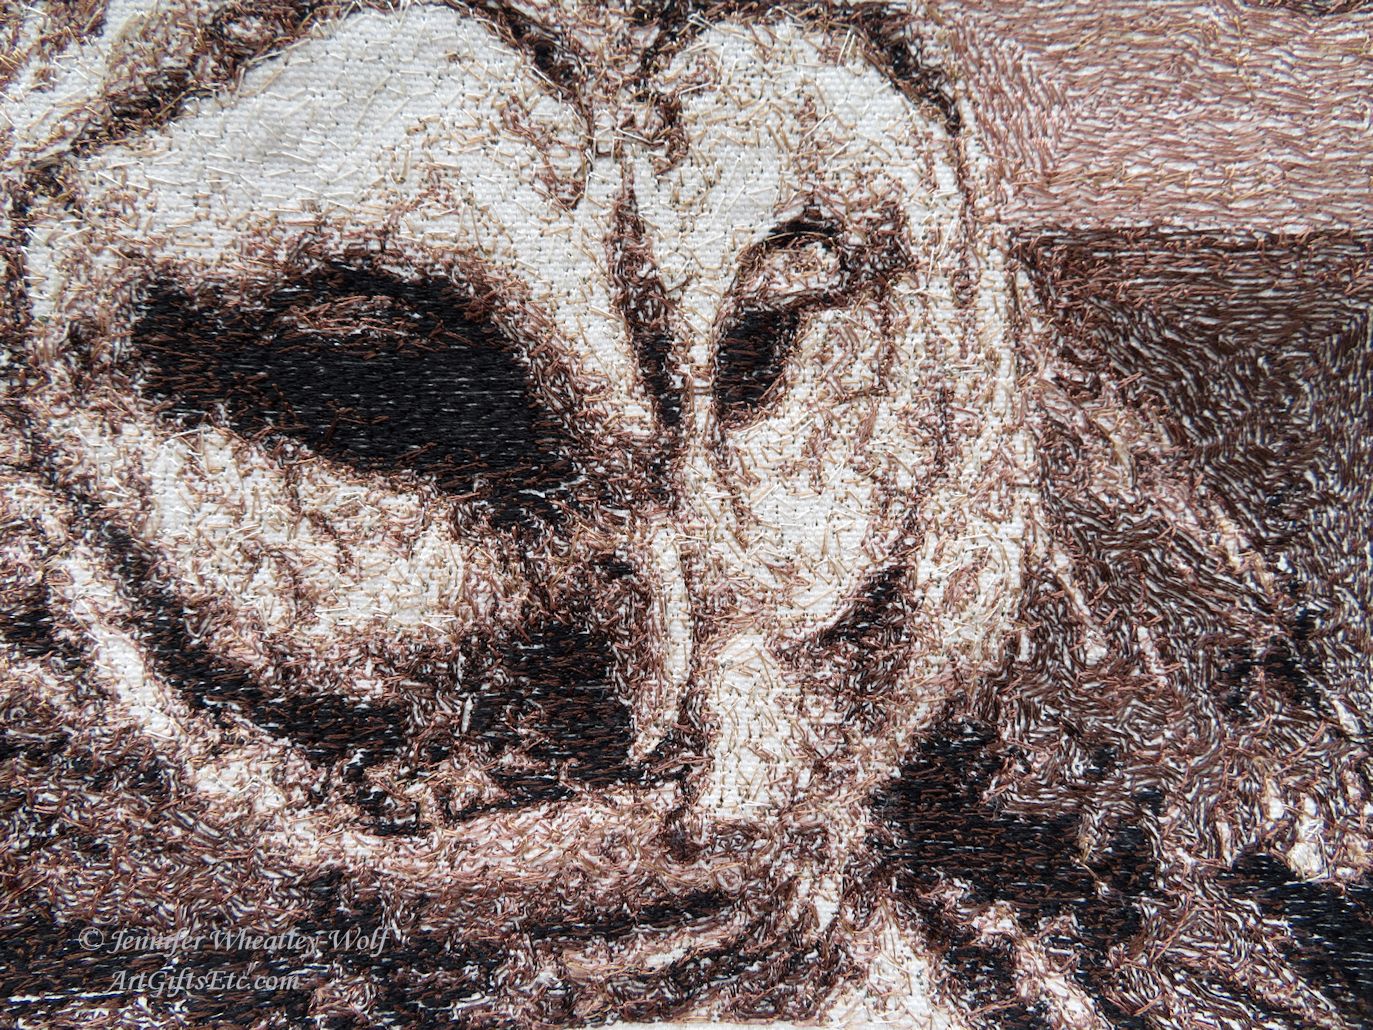 Sfumato-Owl-Portrait-Jennifer-Wheatley-Wolf